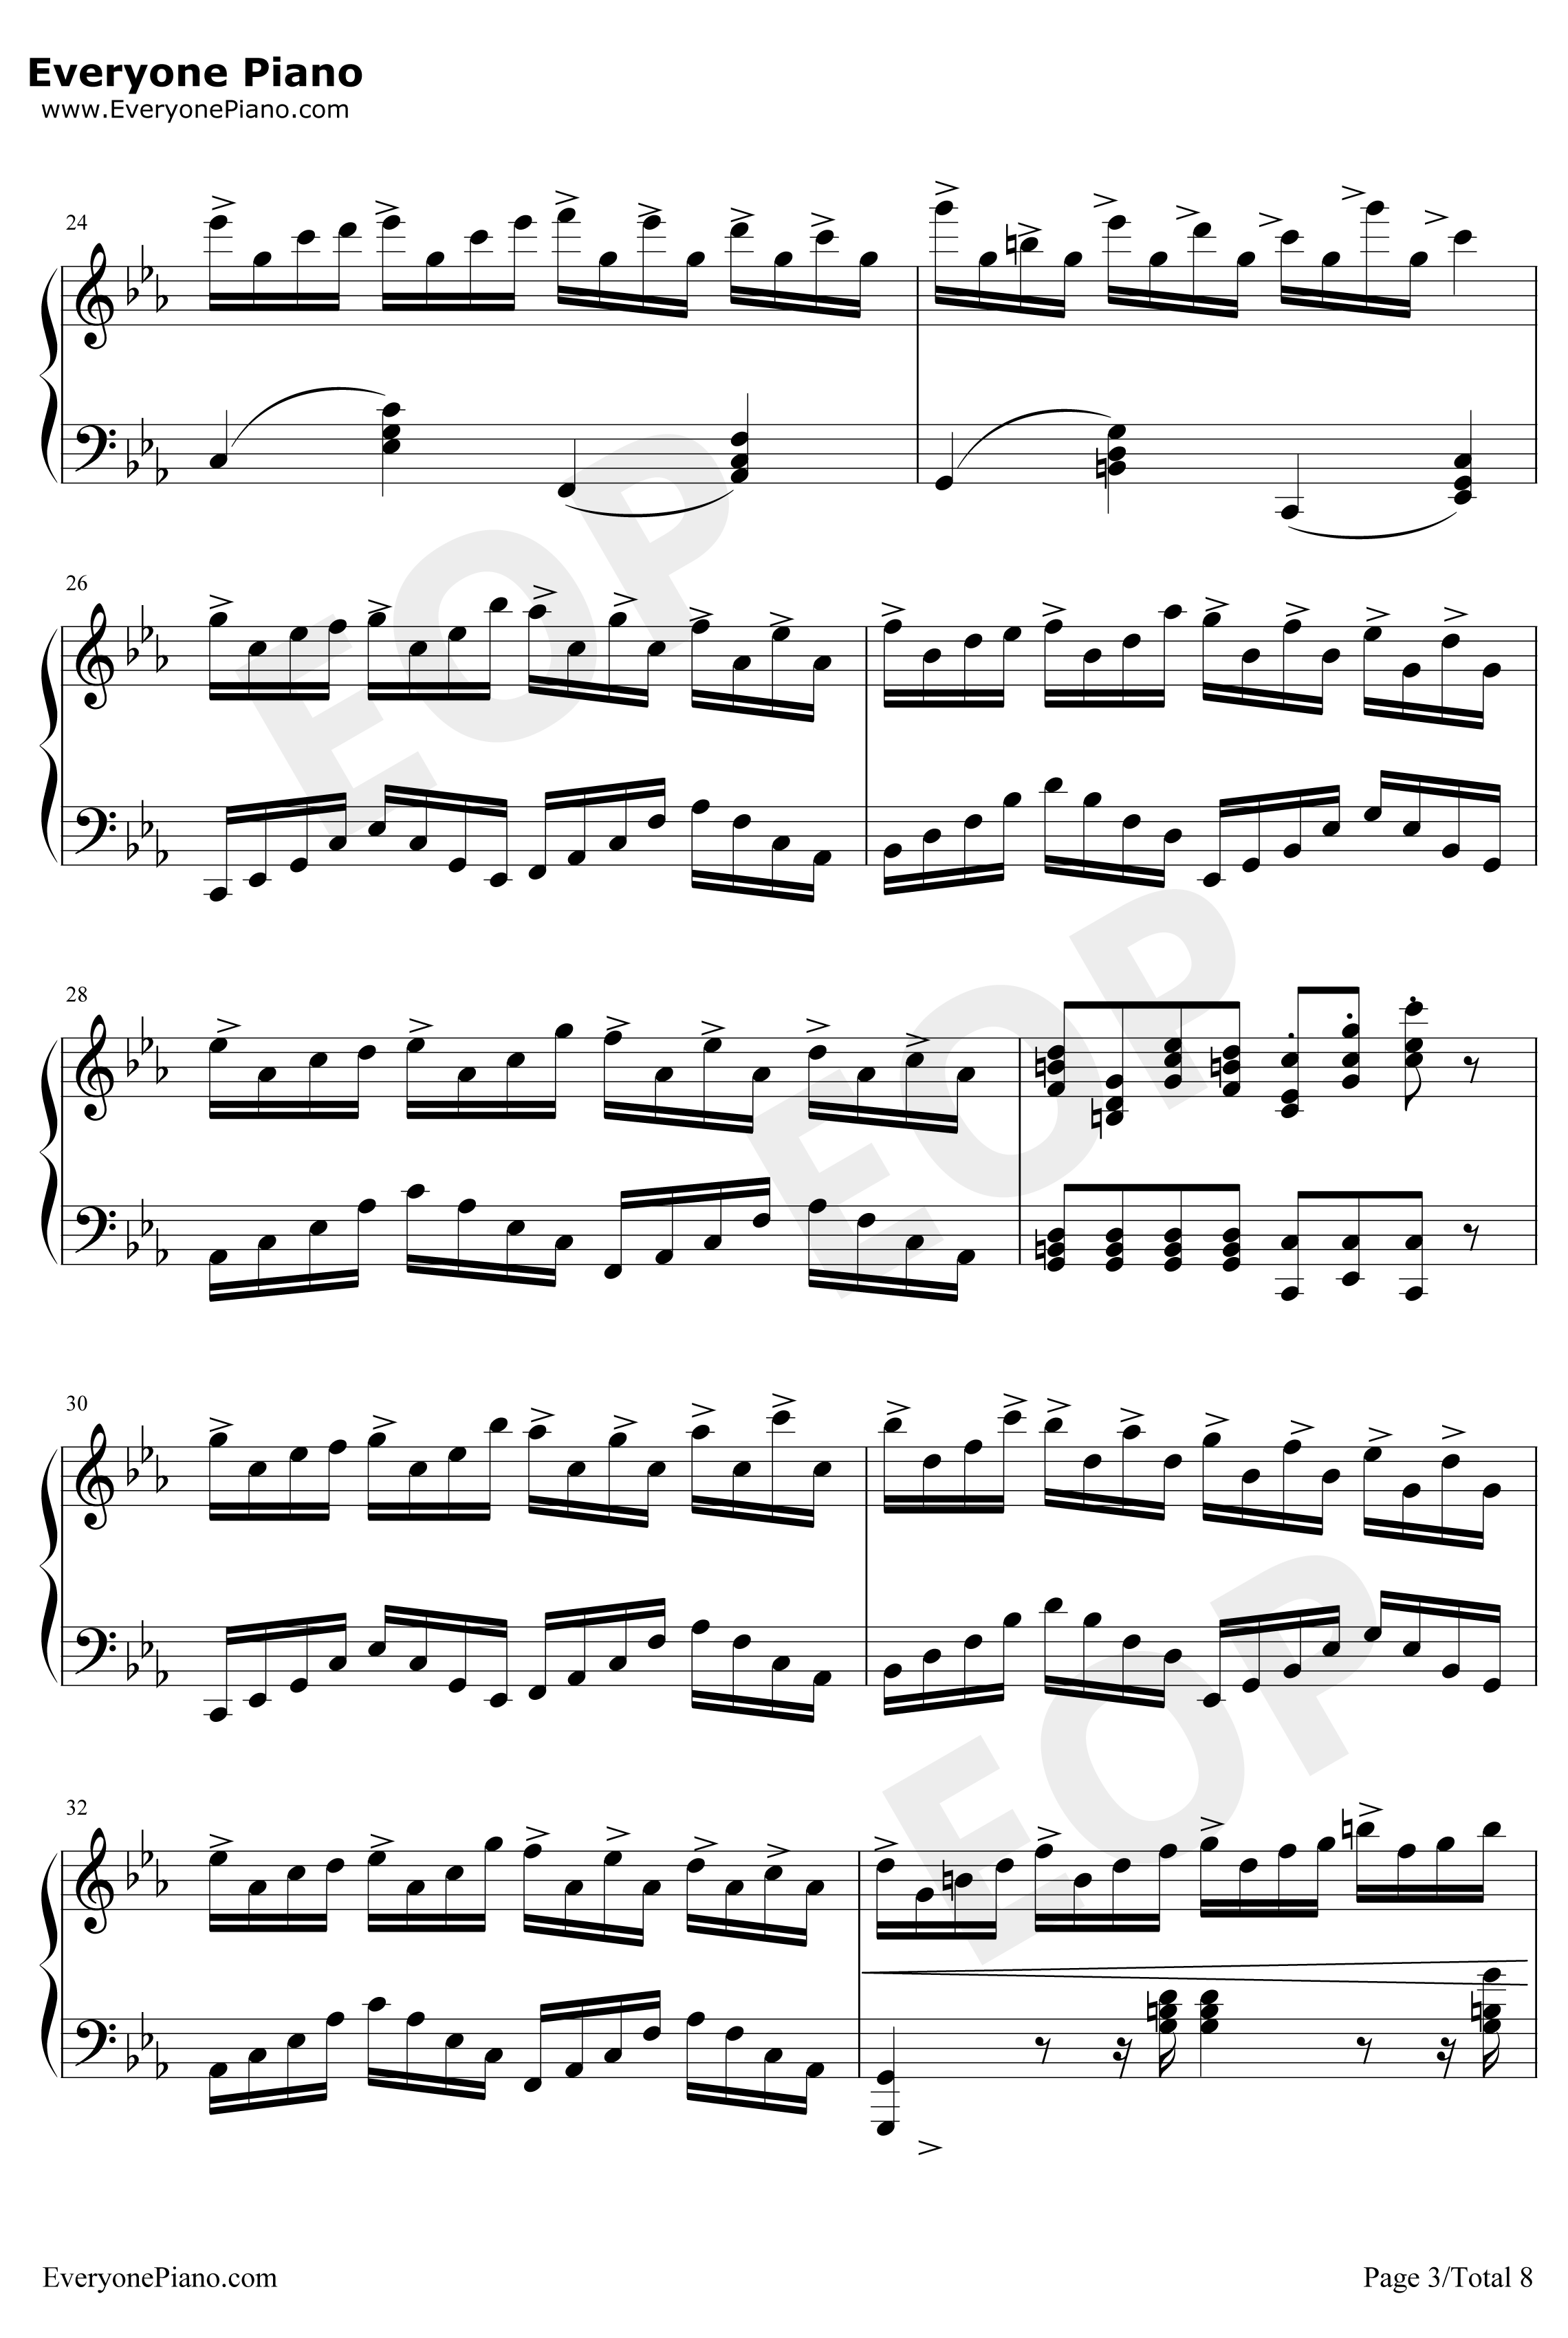 克罗地亚狂想曲钢琴谱-完美版-马克西姆3